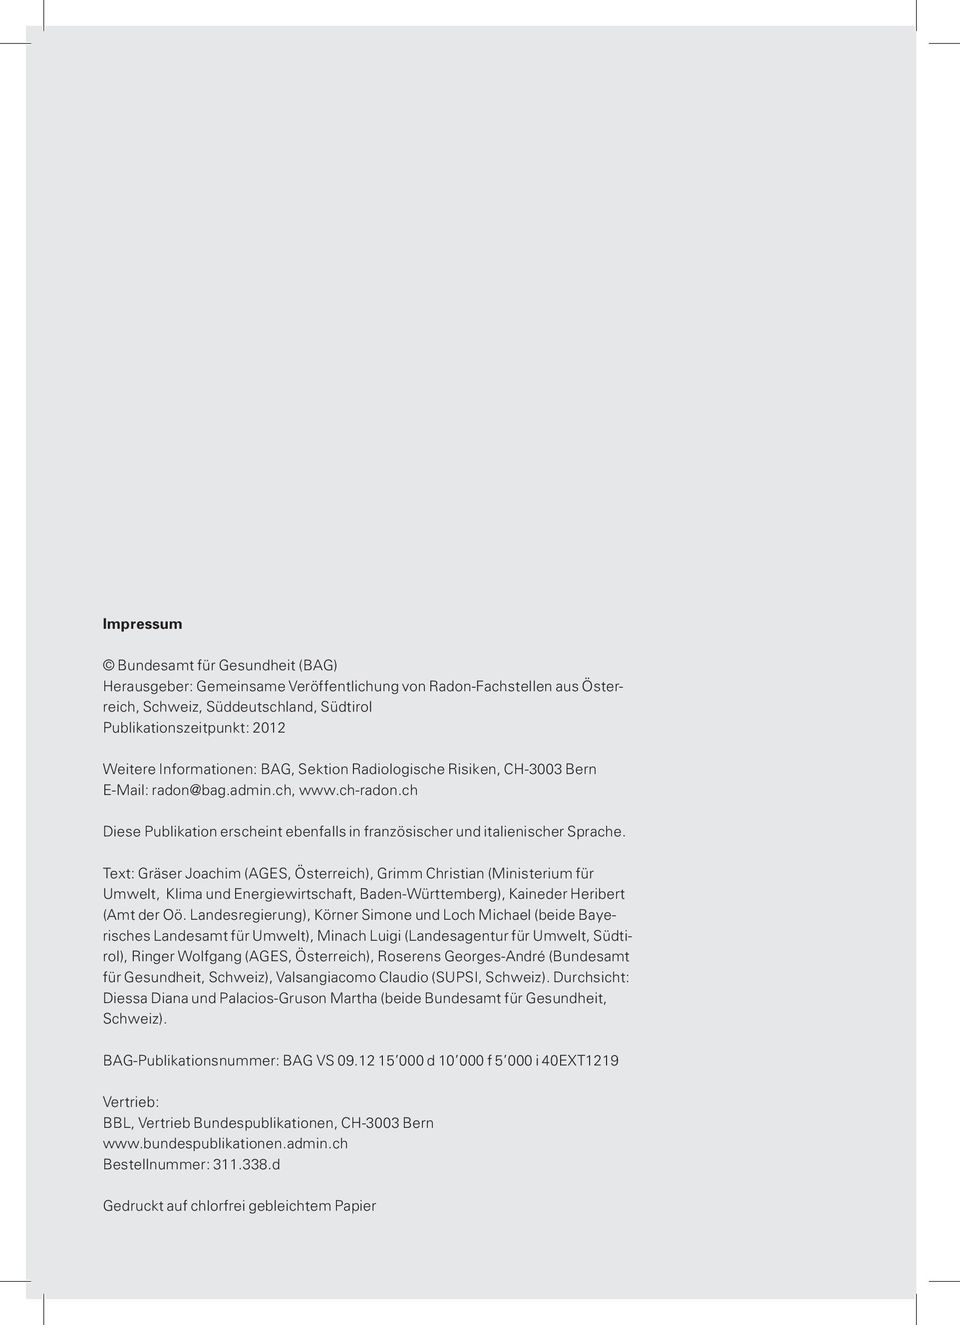 Text: Gräser Joachim (AGES, Österreich), Grimm Christian (Ministerium für Umwelt, Klima und Energiewirtschaft, Baden-Württemberg), Kaineder Heribert (Amt der Oö.